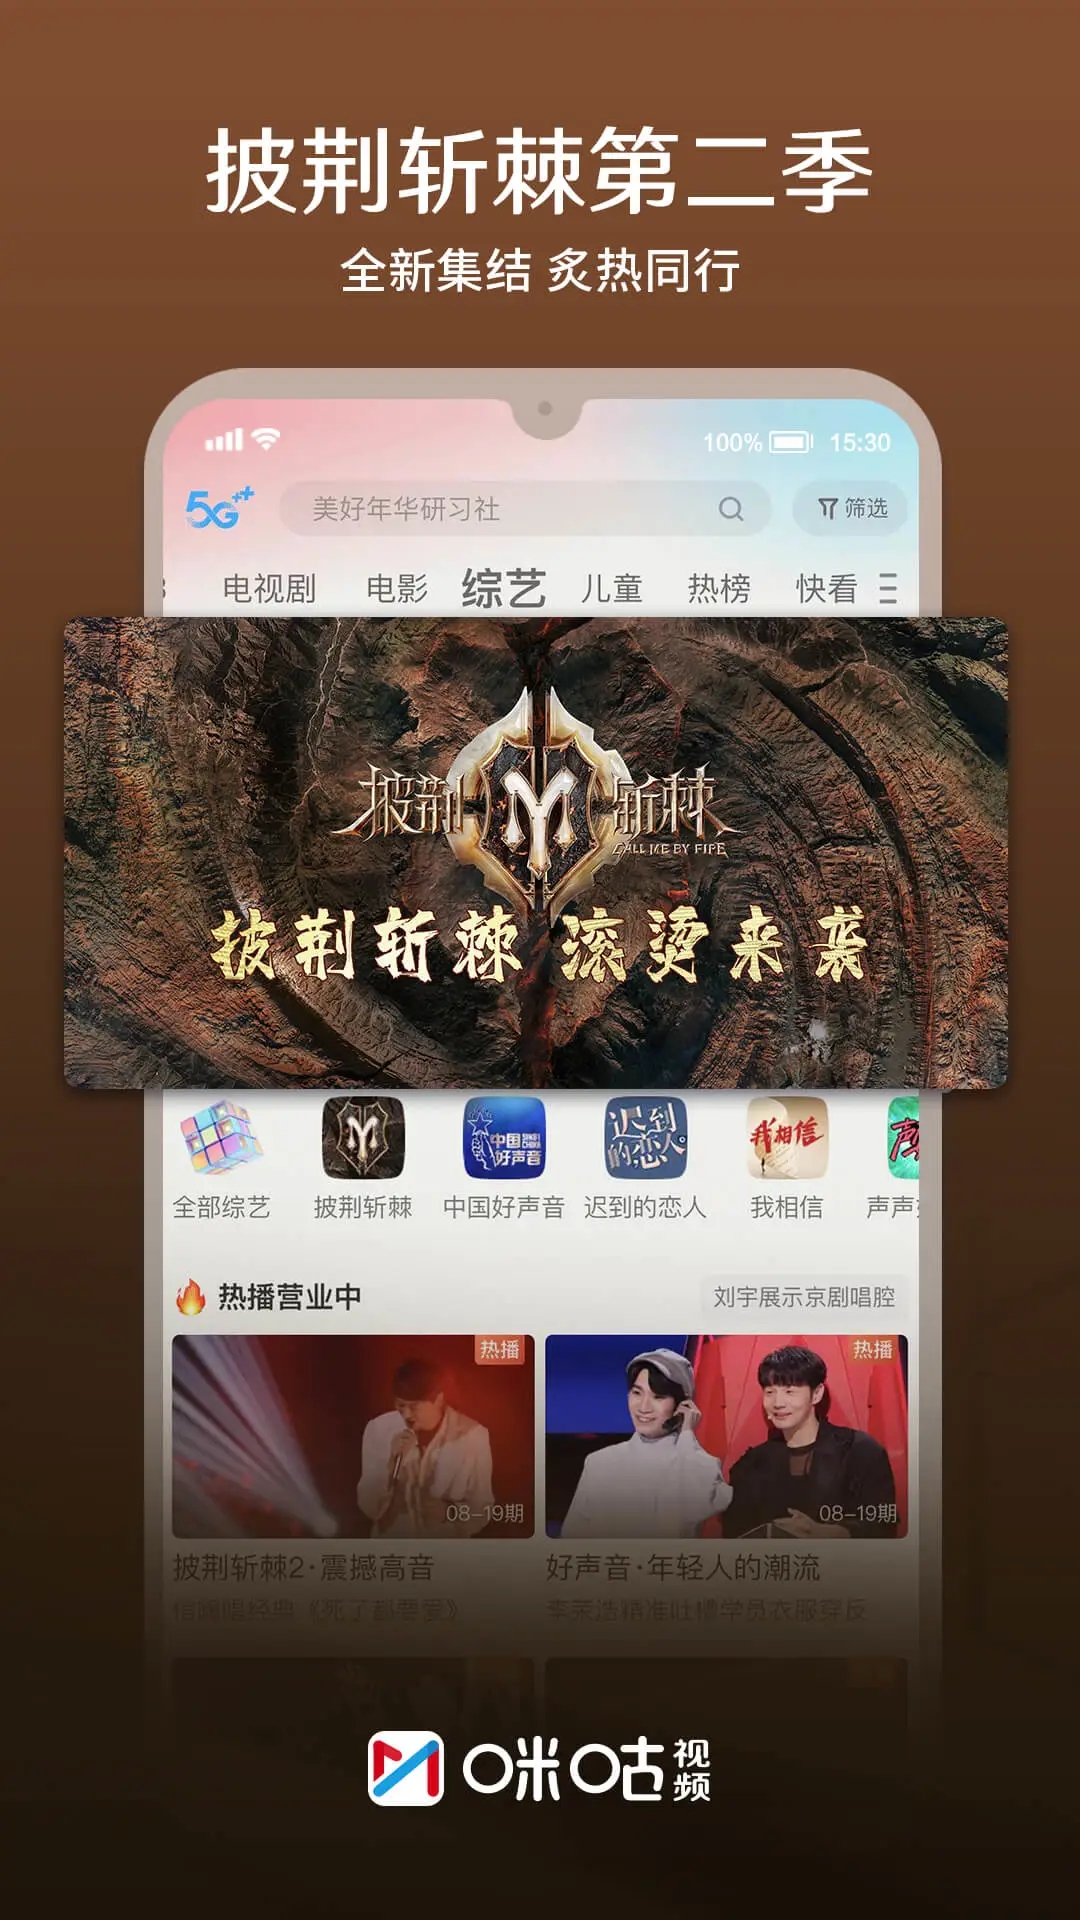 咪咕视频官方下载app